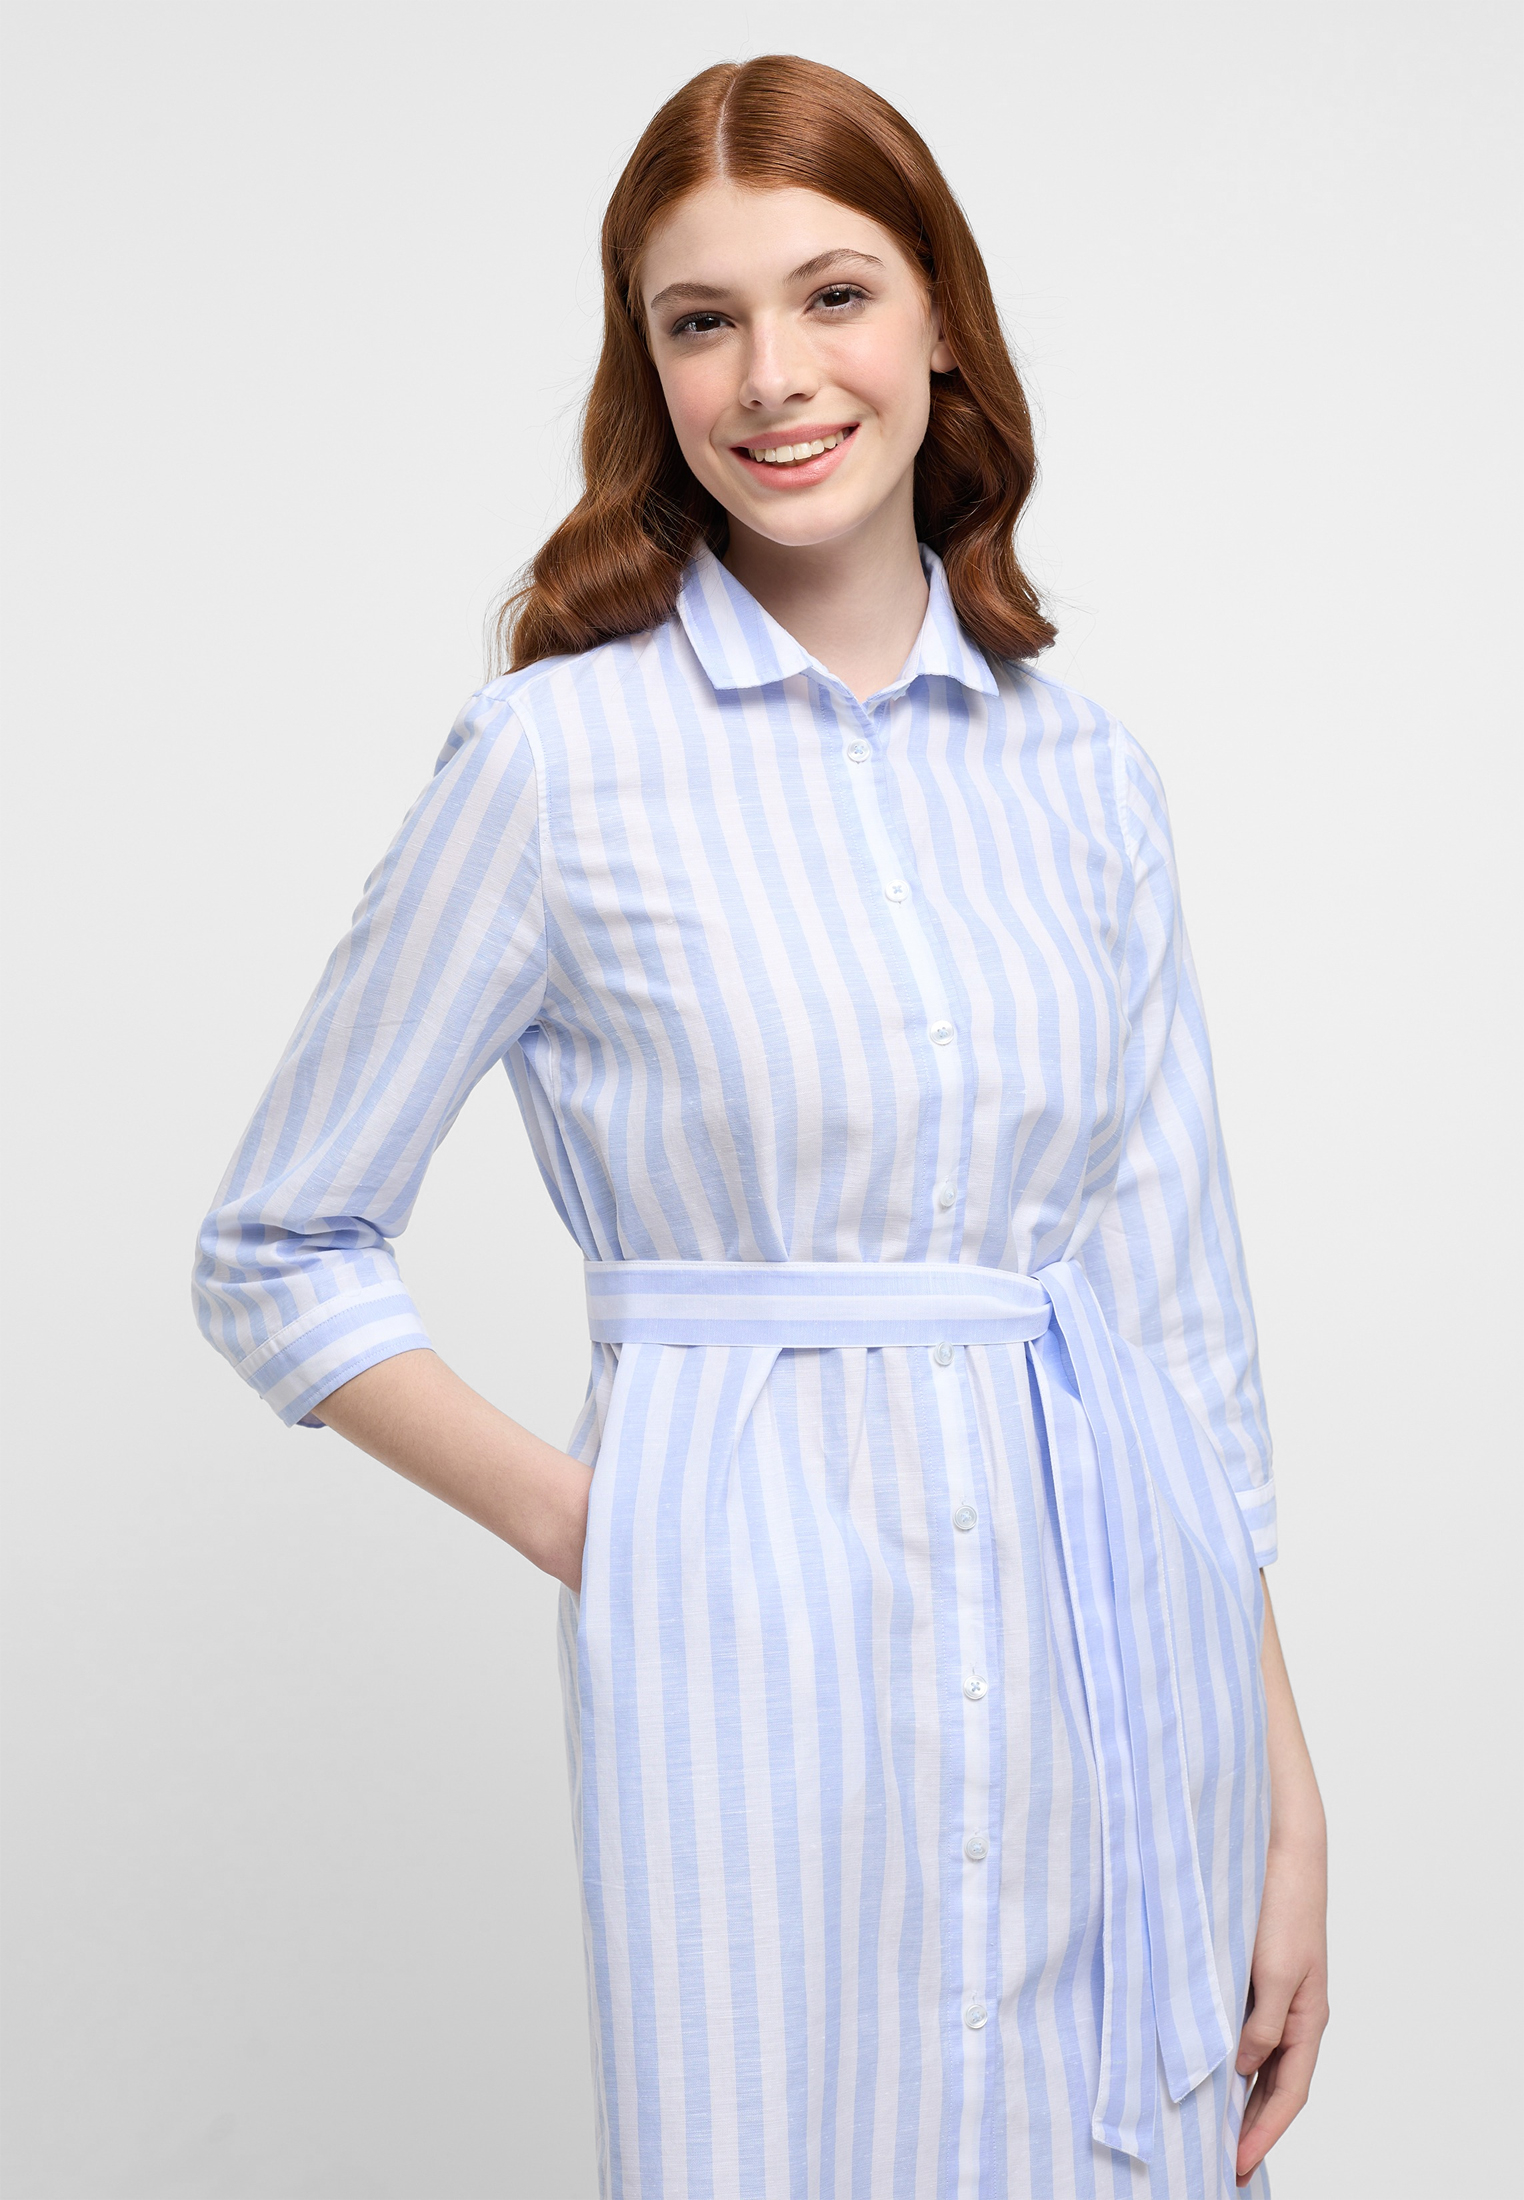 Hemdblusenkleid in light blue striped | light blue | 46 | 3/4 sleeves |  2DR00267-01-11-46-3/4 | Blusenkleider